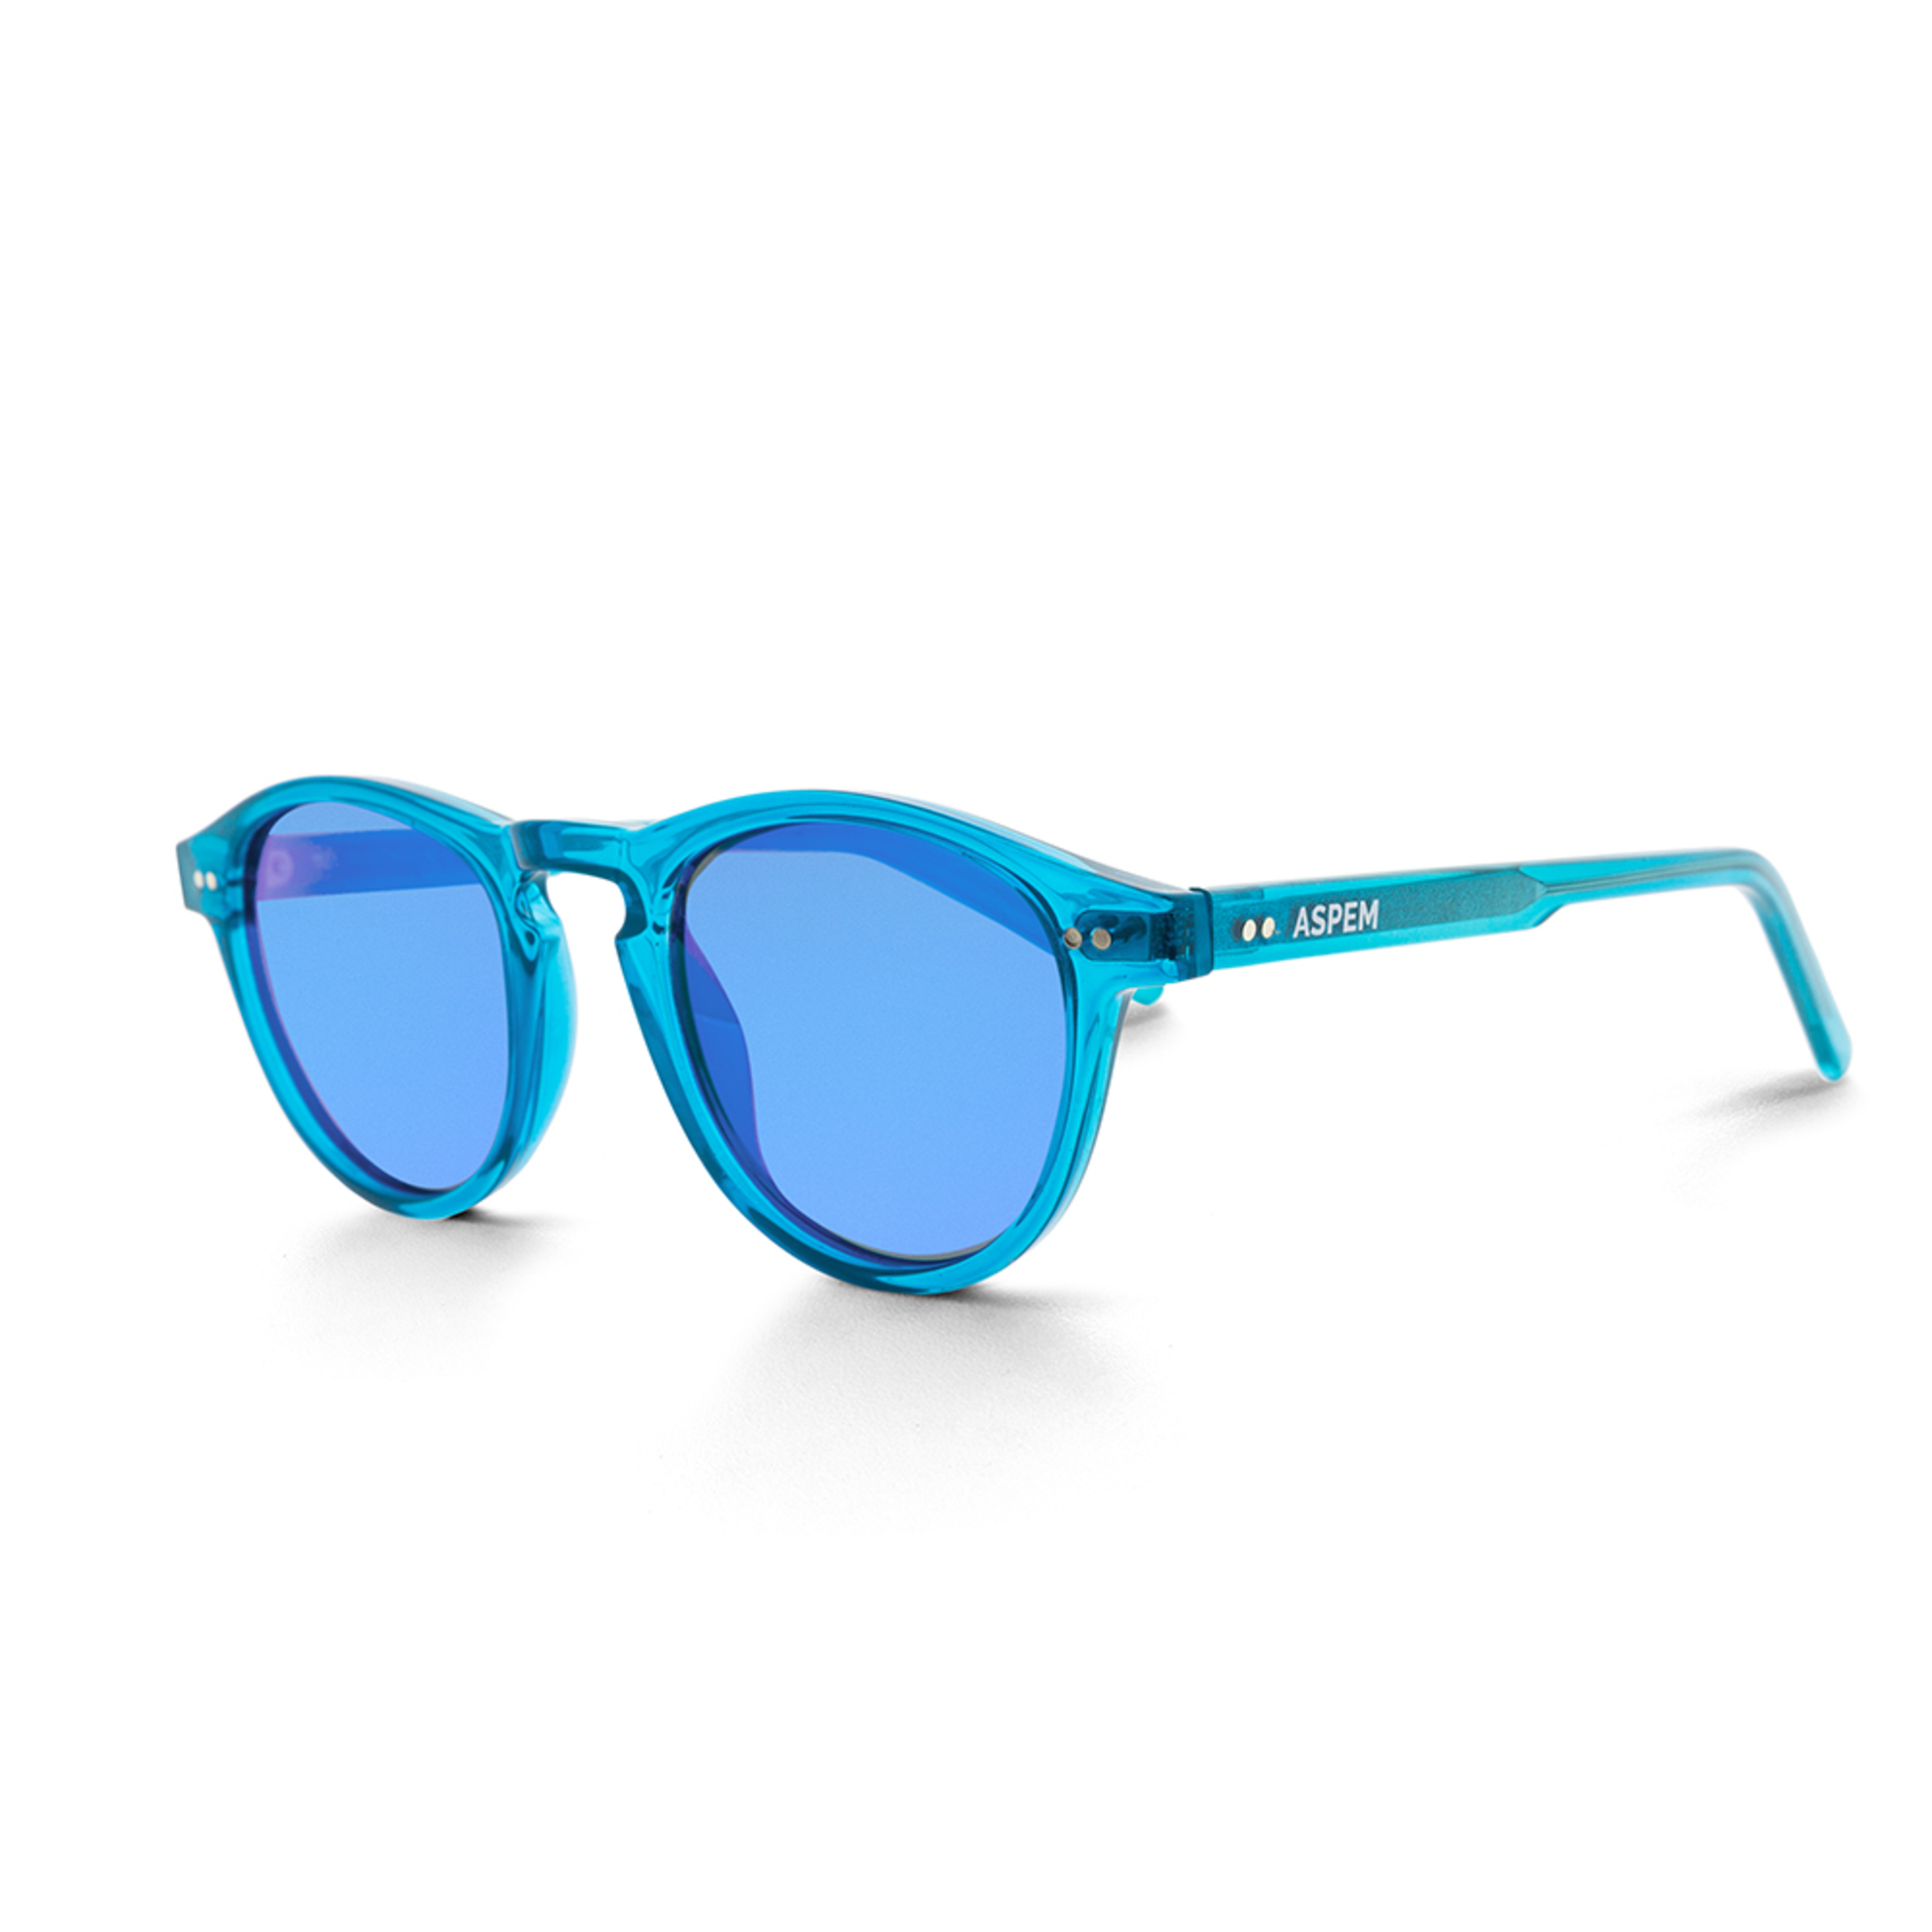 Gafas De Sol Aspem Crowley - Azul Turquesa - Redonda  MKP